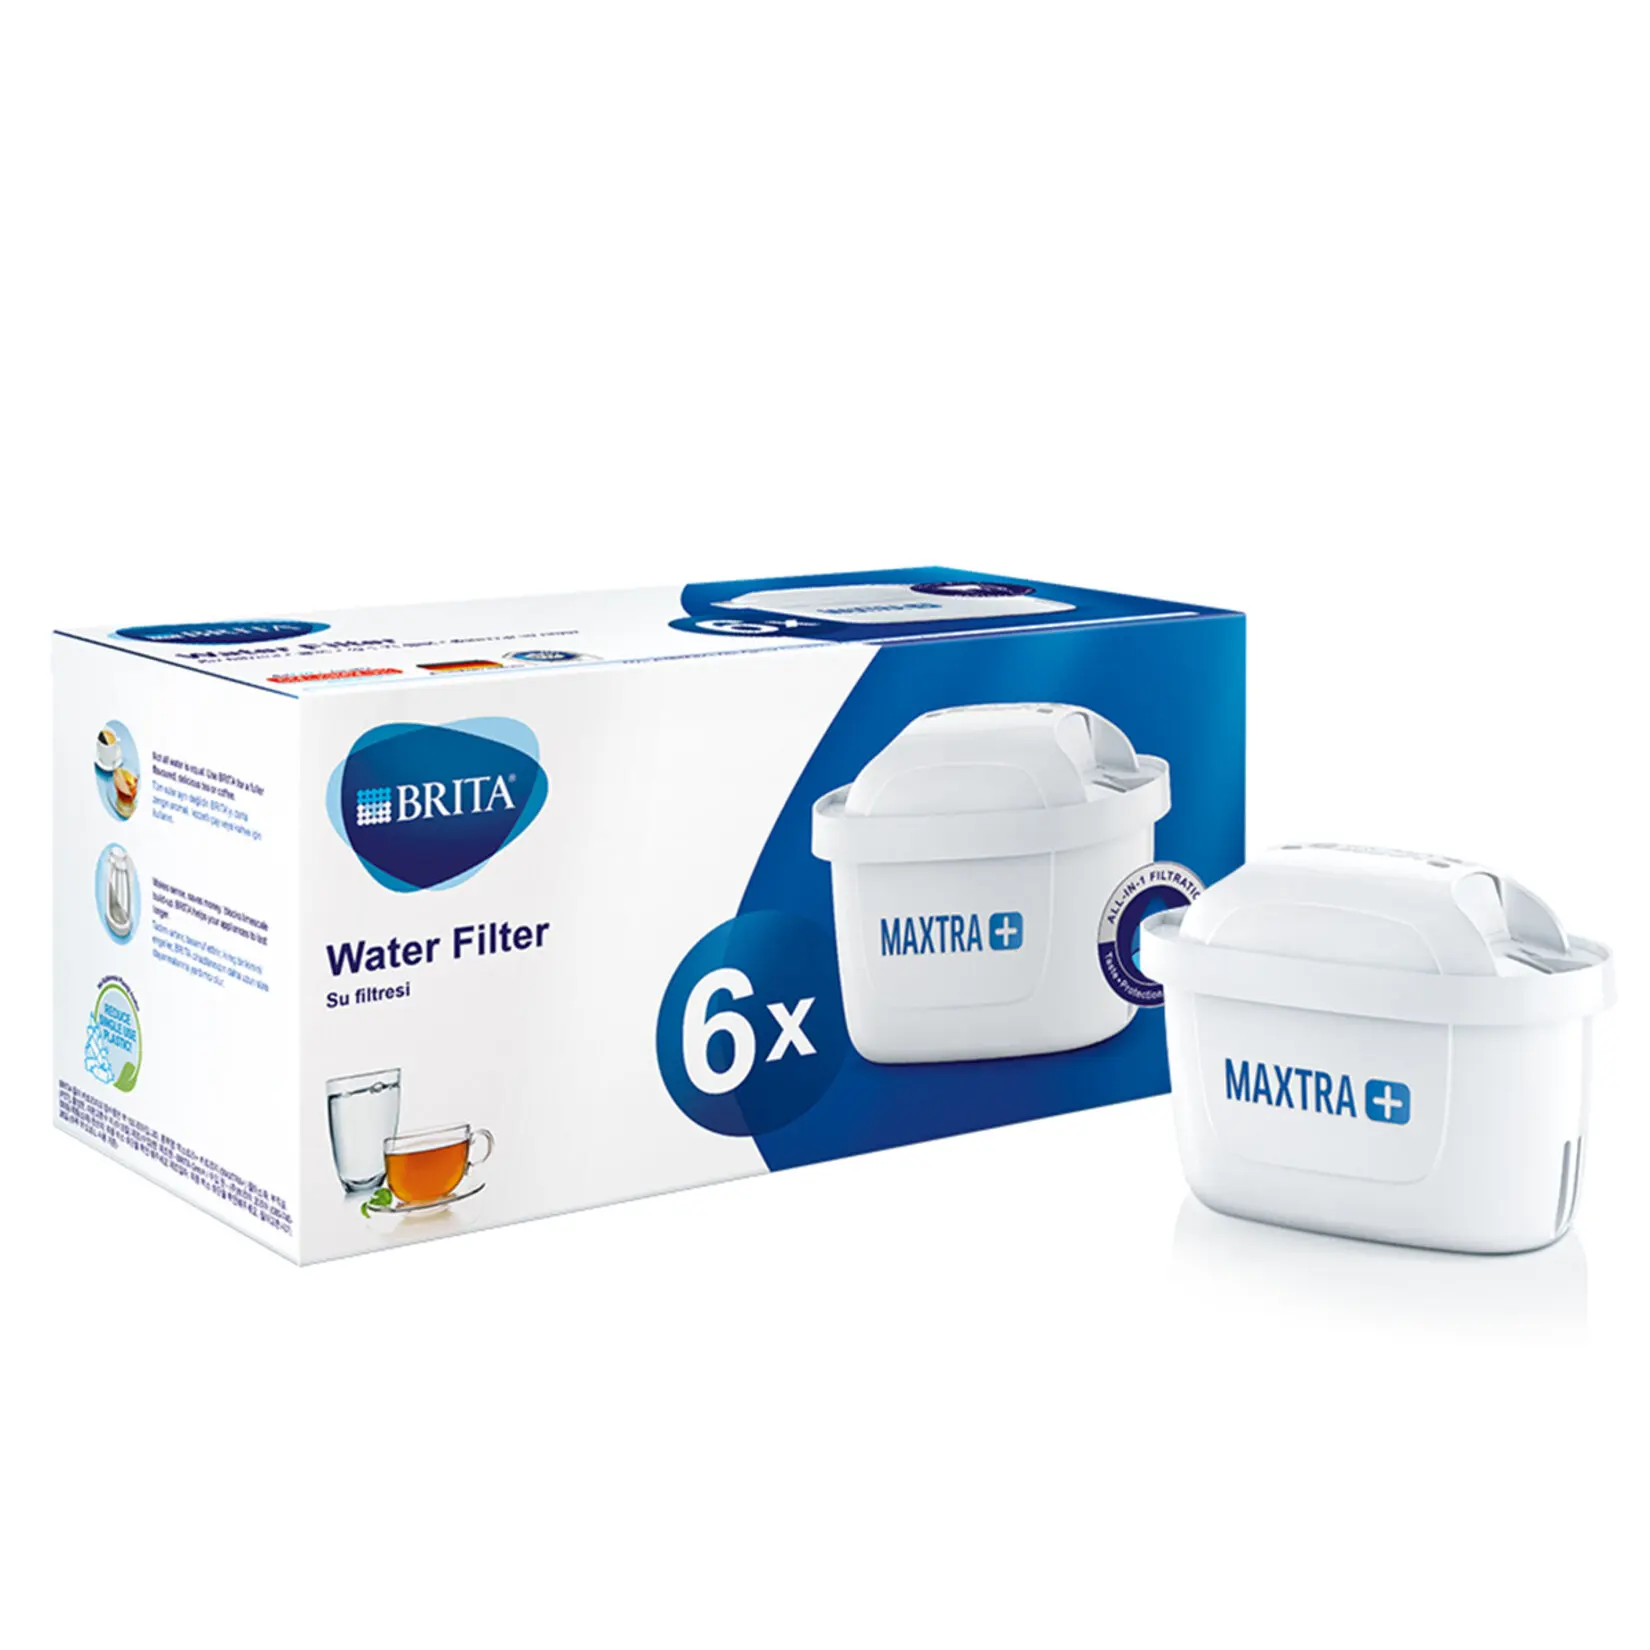 Buy Brita Marella 2.4L + 6x Maxtra Pro All-in-1 water filter white